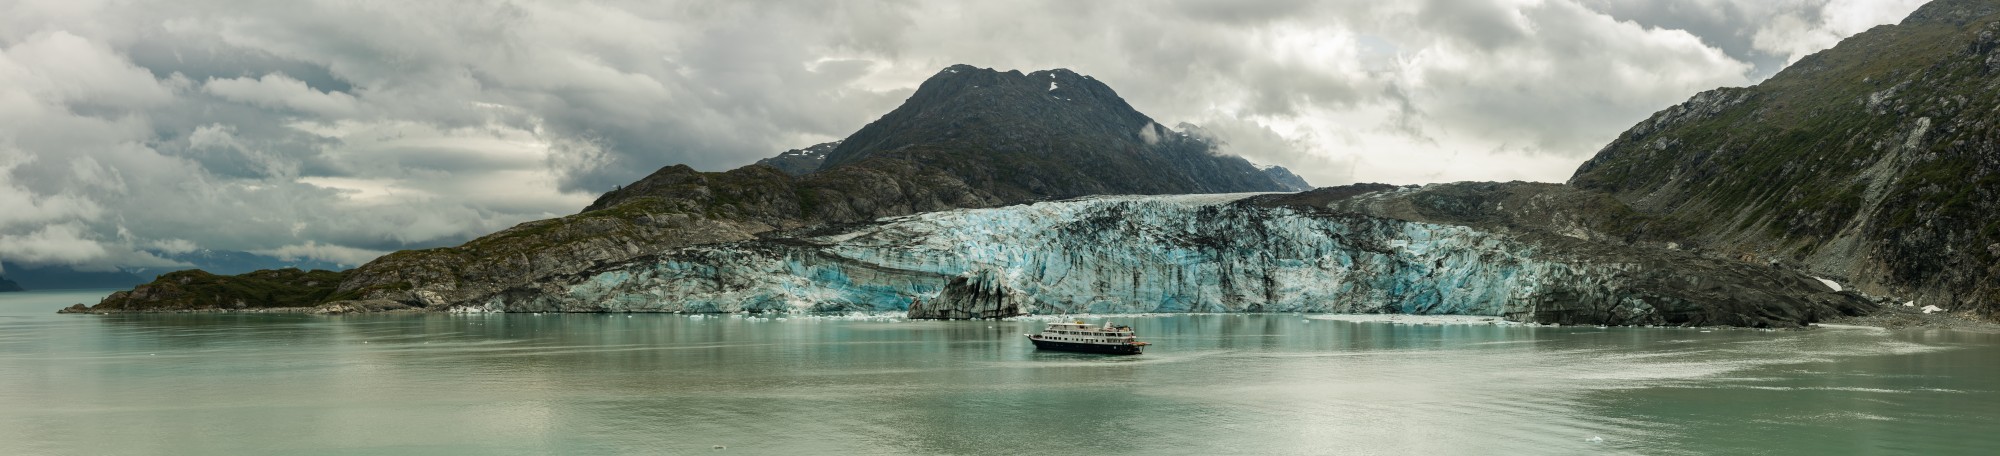 Glaciar Johns Hopkins, Parque Nacional Bahía del Glaciar, Alaska, Estados Unidos, 2017-08-19, DD 129-133 PAN